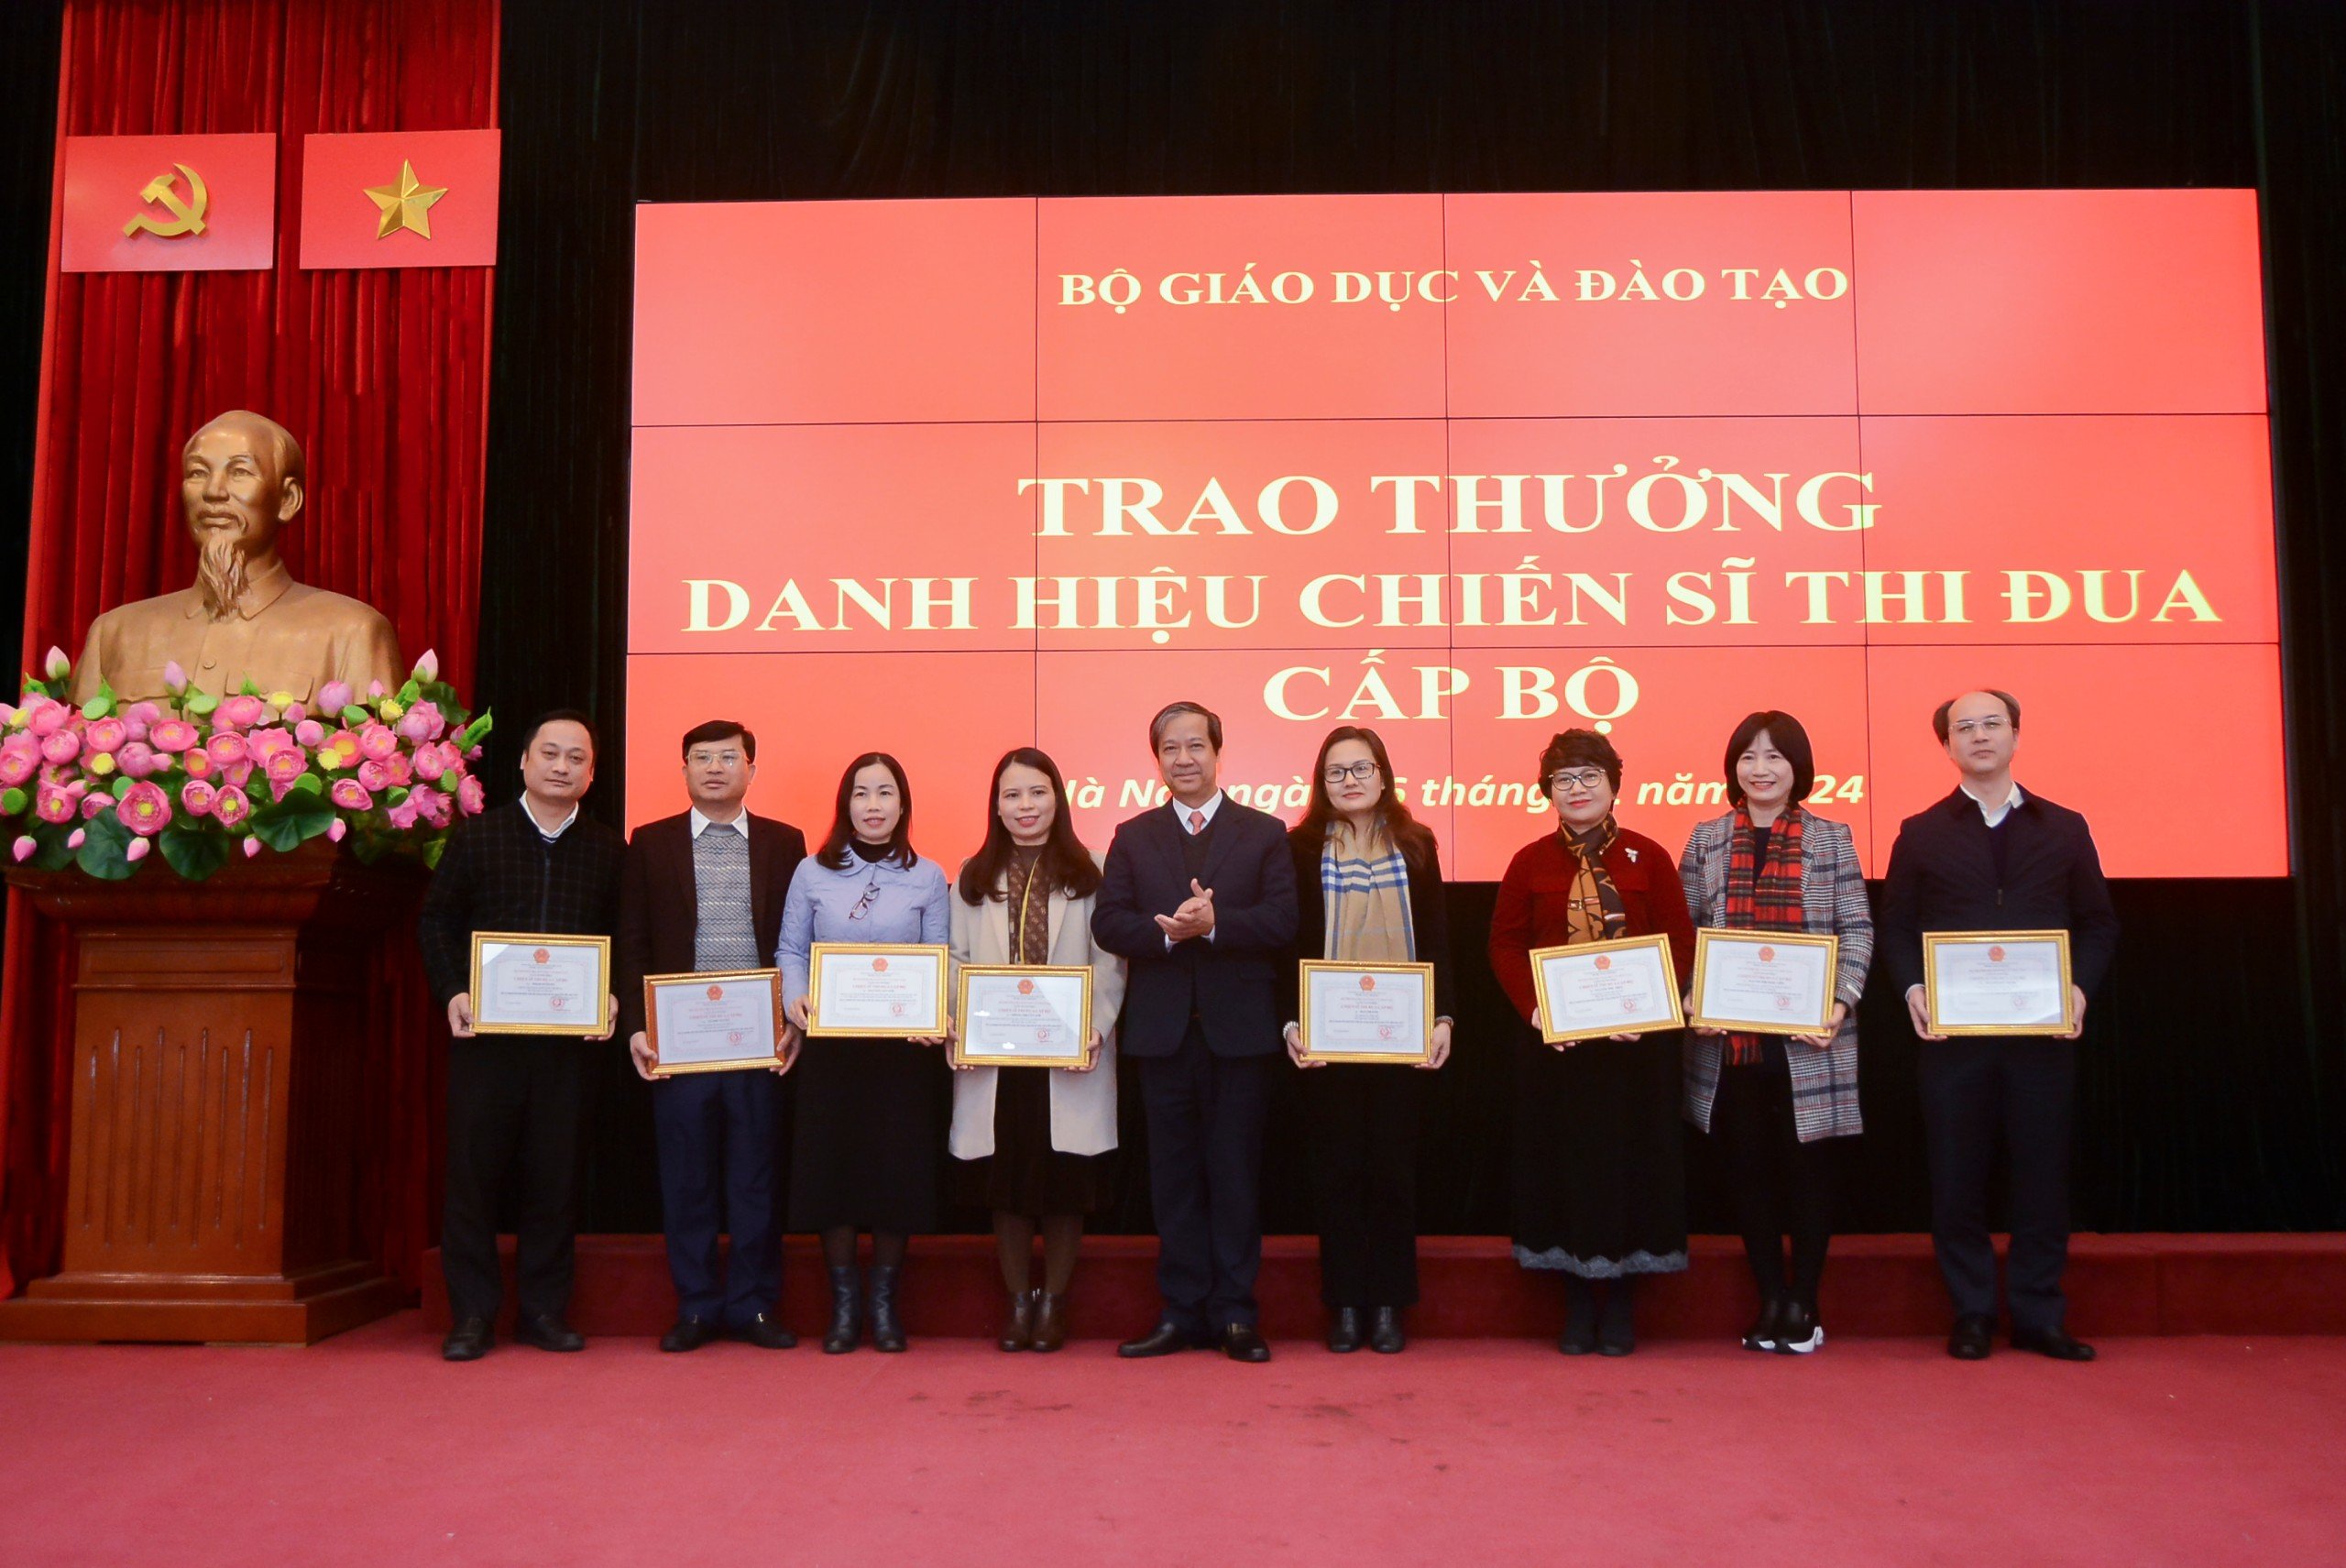 Bộ trưởng Nguyễn Kim Sơn trao quyết định công nhận chiến sĩ thi đua cấp Bộ cho các cá nhân.